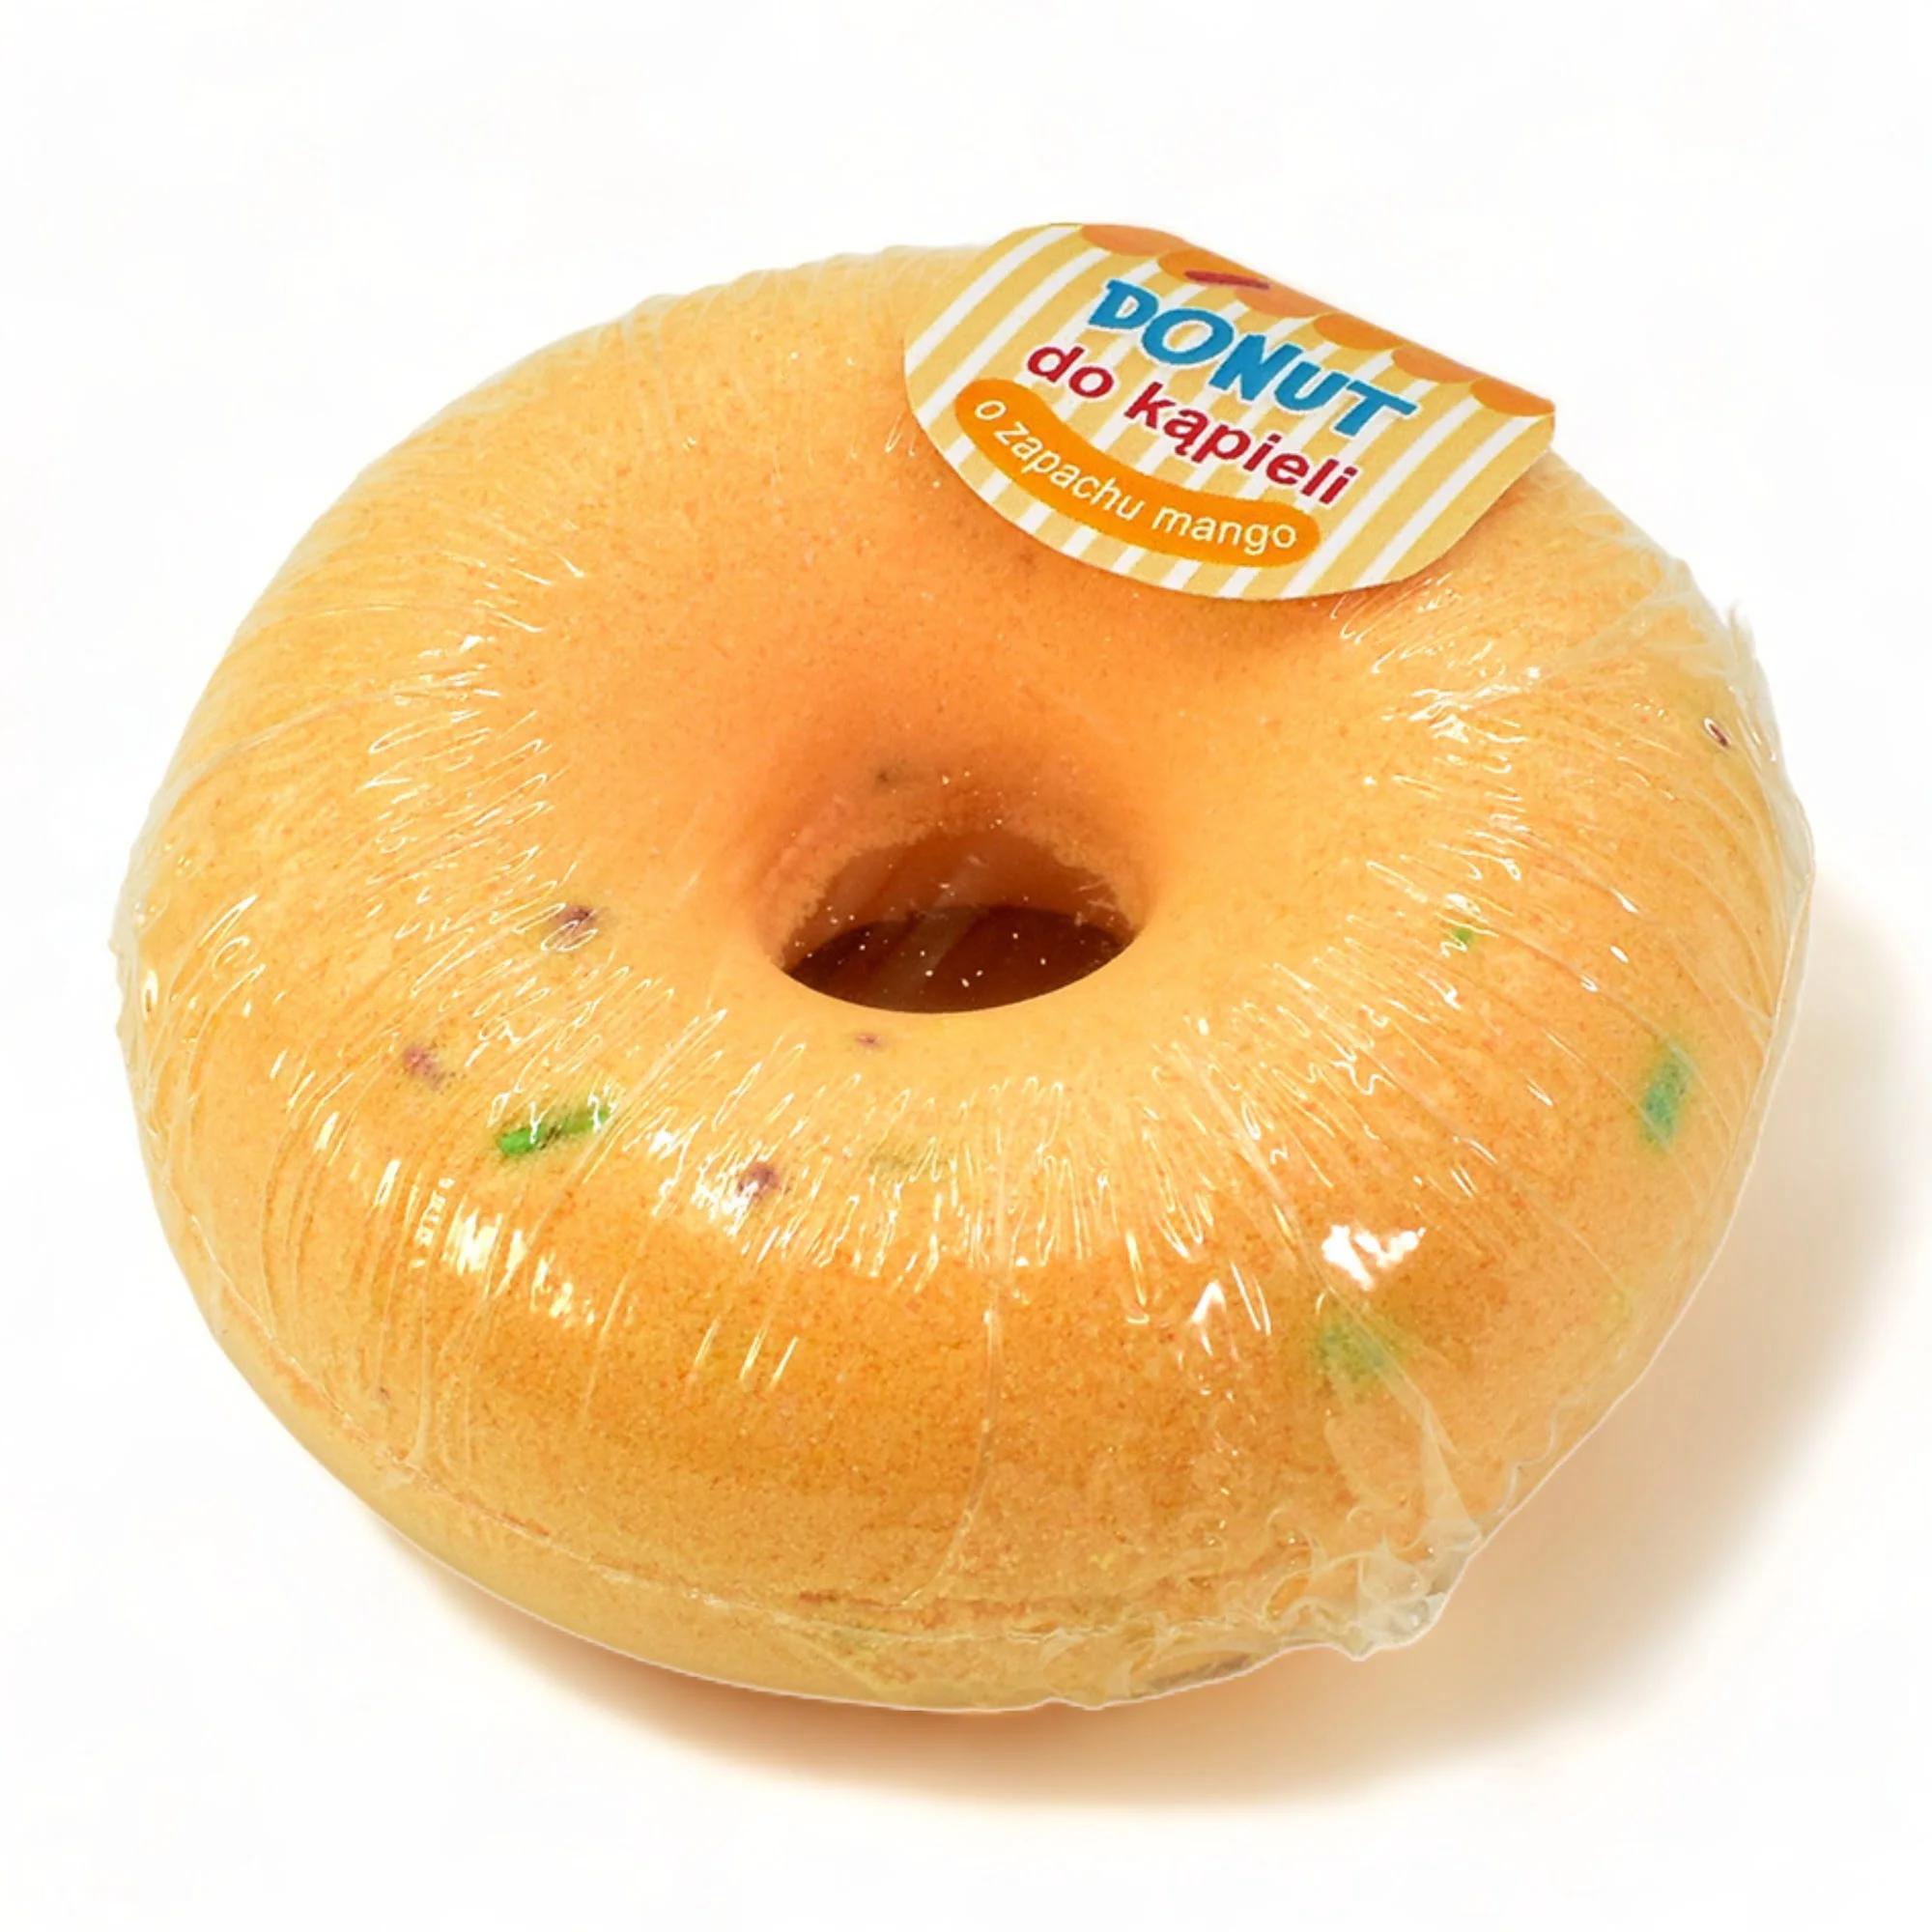 Donut kula do kąpieli pączek - MANGO (145g)